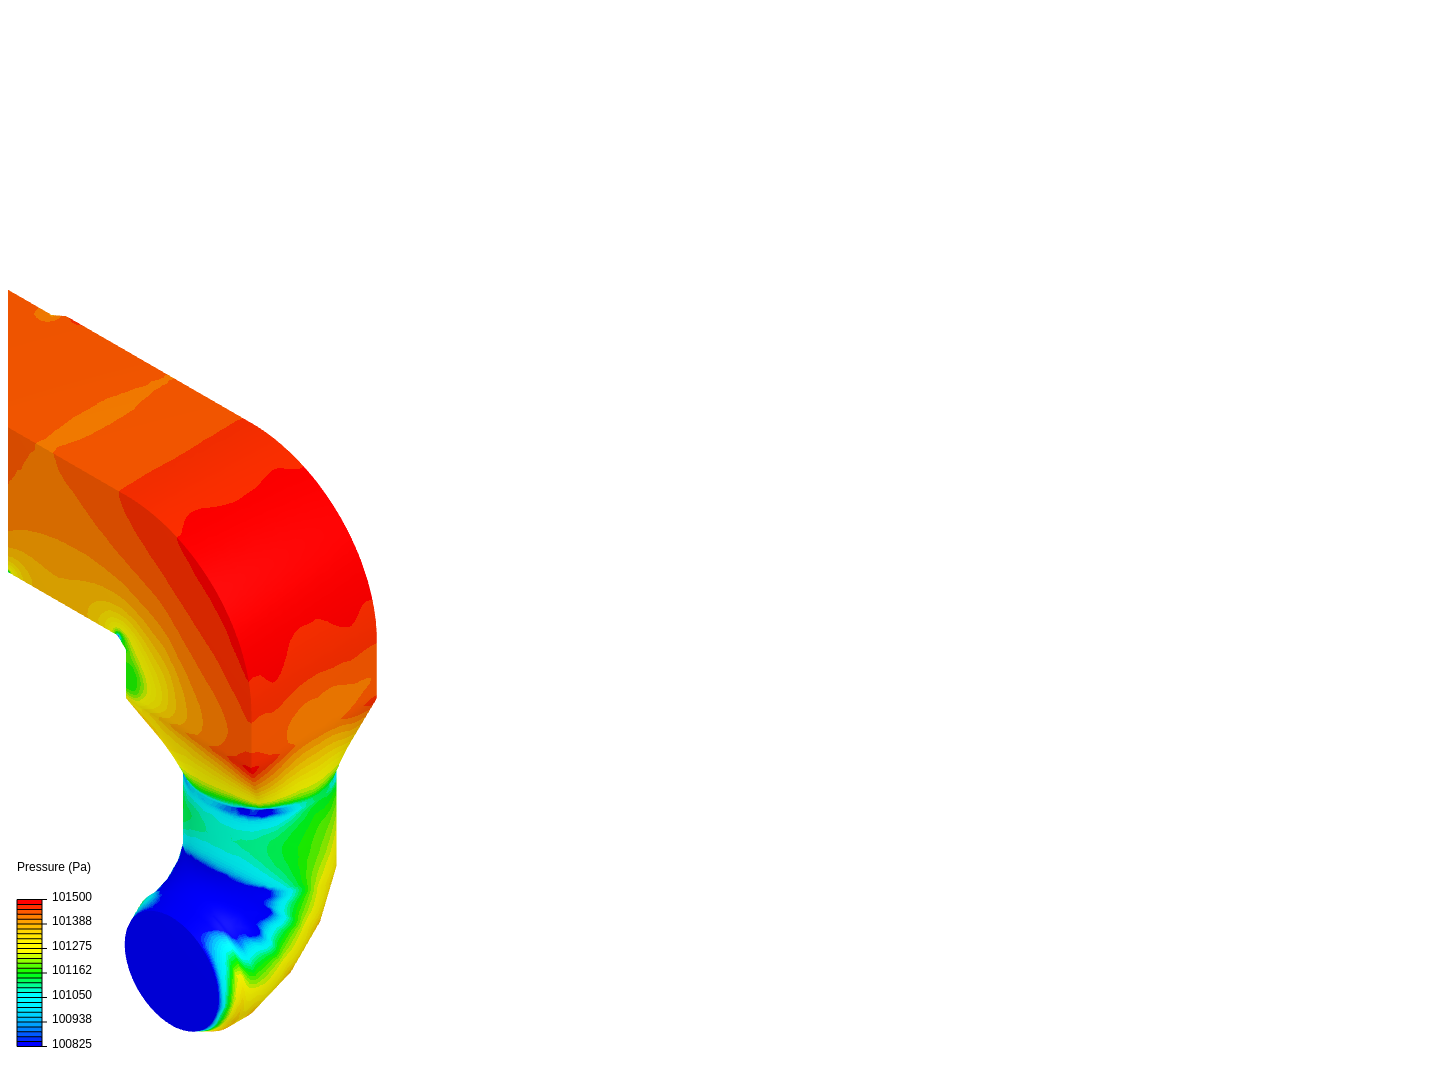 Erembodegem Duct Simulation 10 image